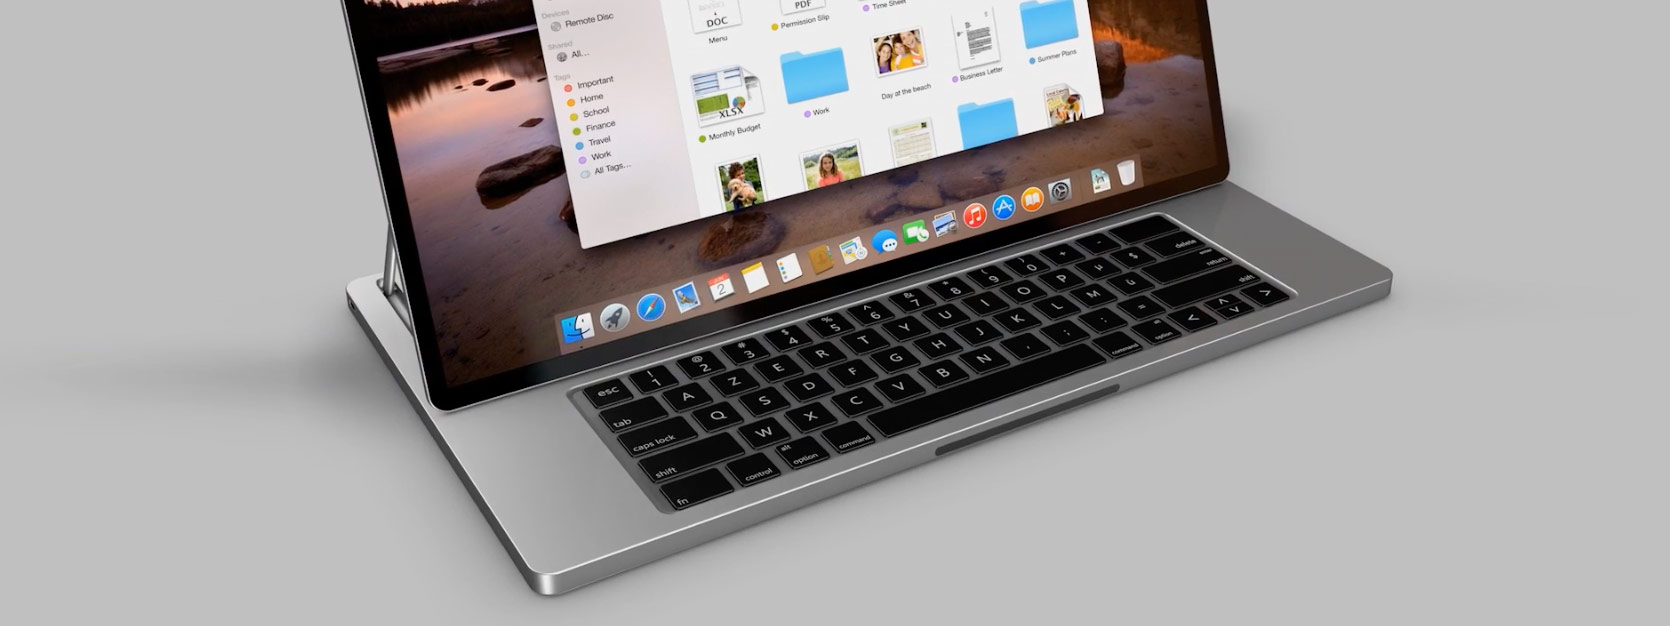 Anh em nghĩ sao về MacBook có bàn phím trượt và màn hình cảm ứng?